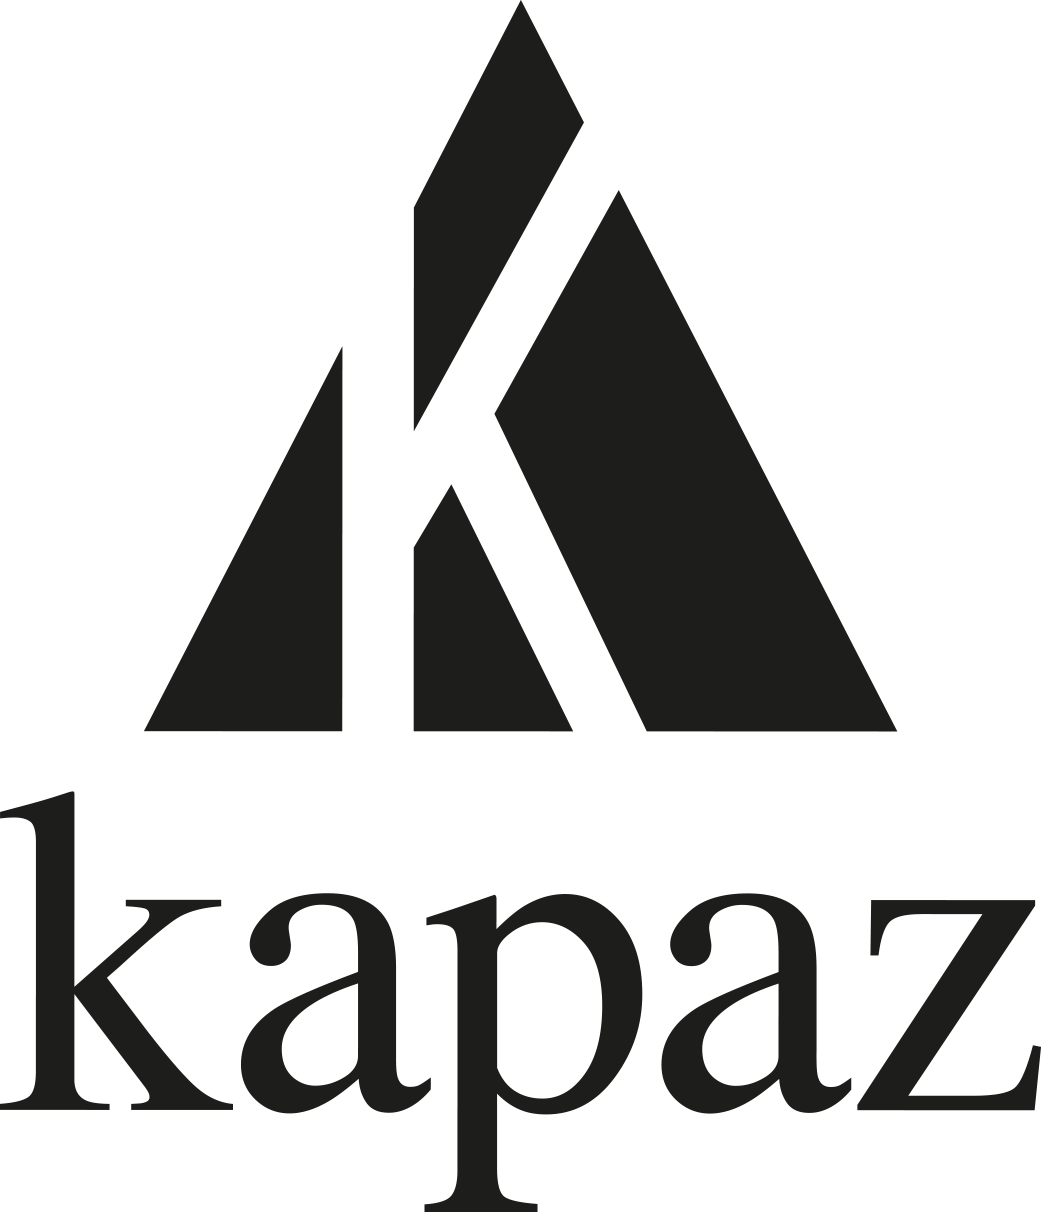 Les Éditions Kapaz